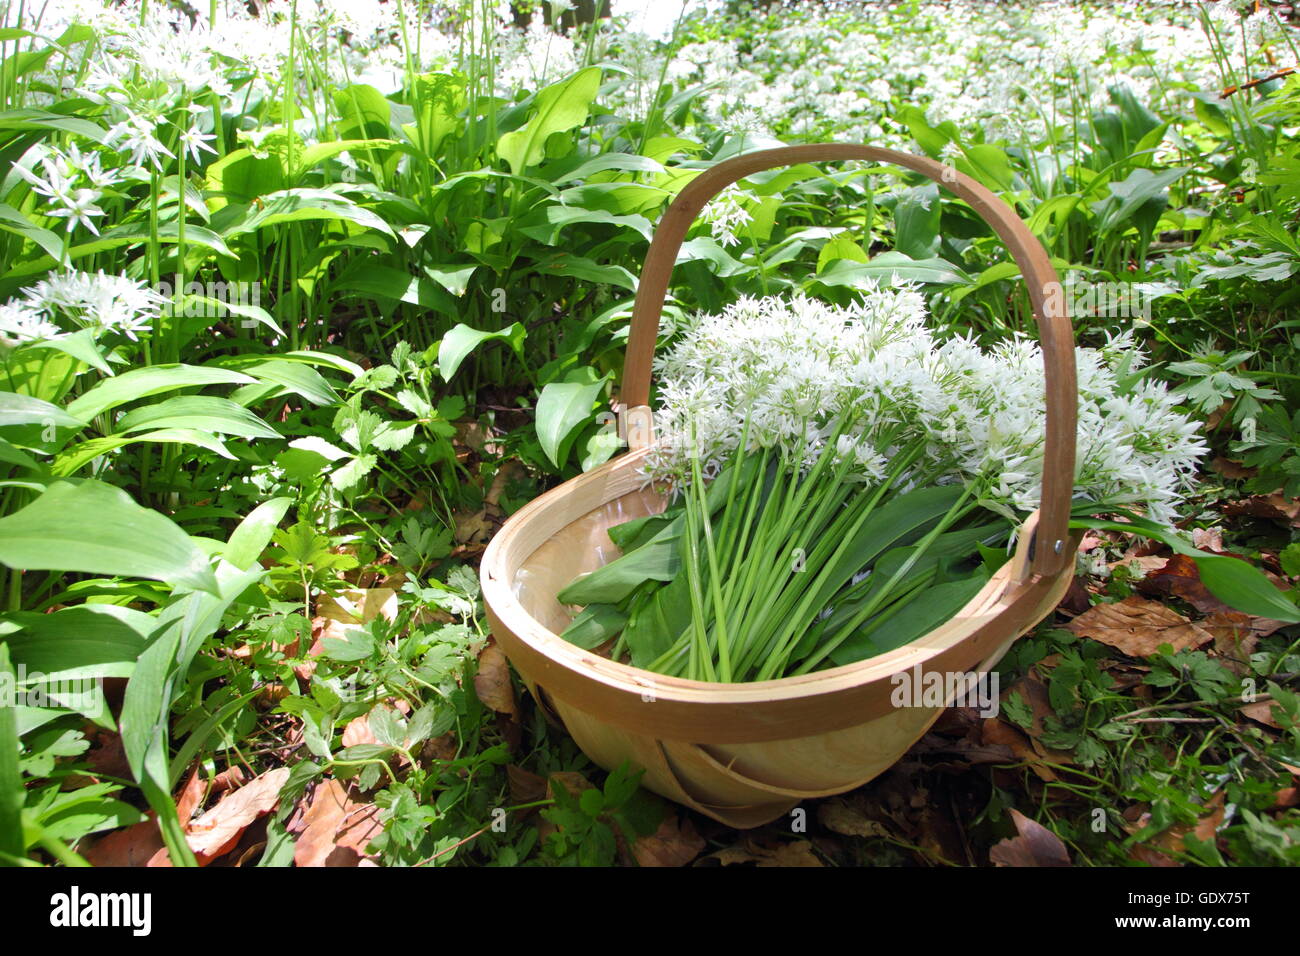 Allium ursinum. Rovistando aglio selvatico in un bosco inglese in primavera - Maggio, REGNO UNITO Foto Stock